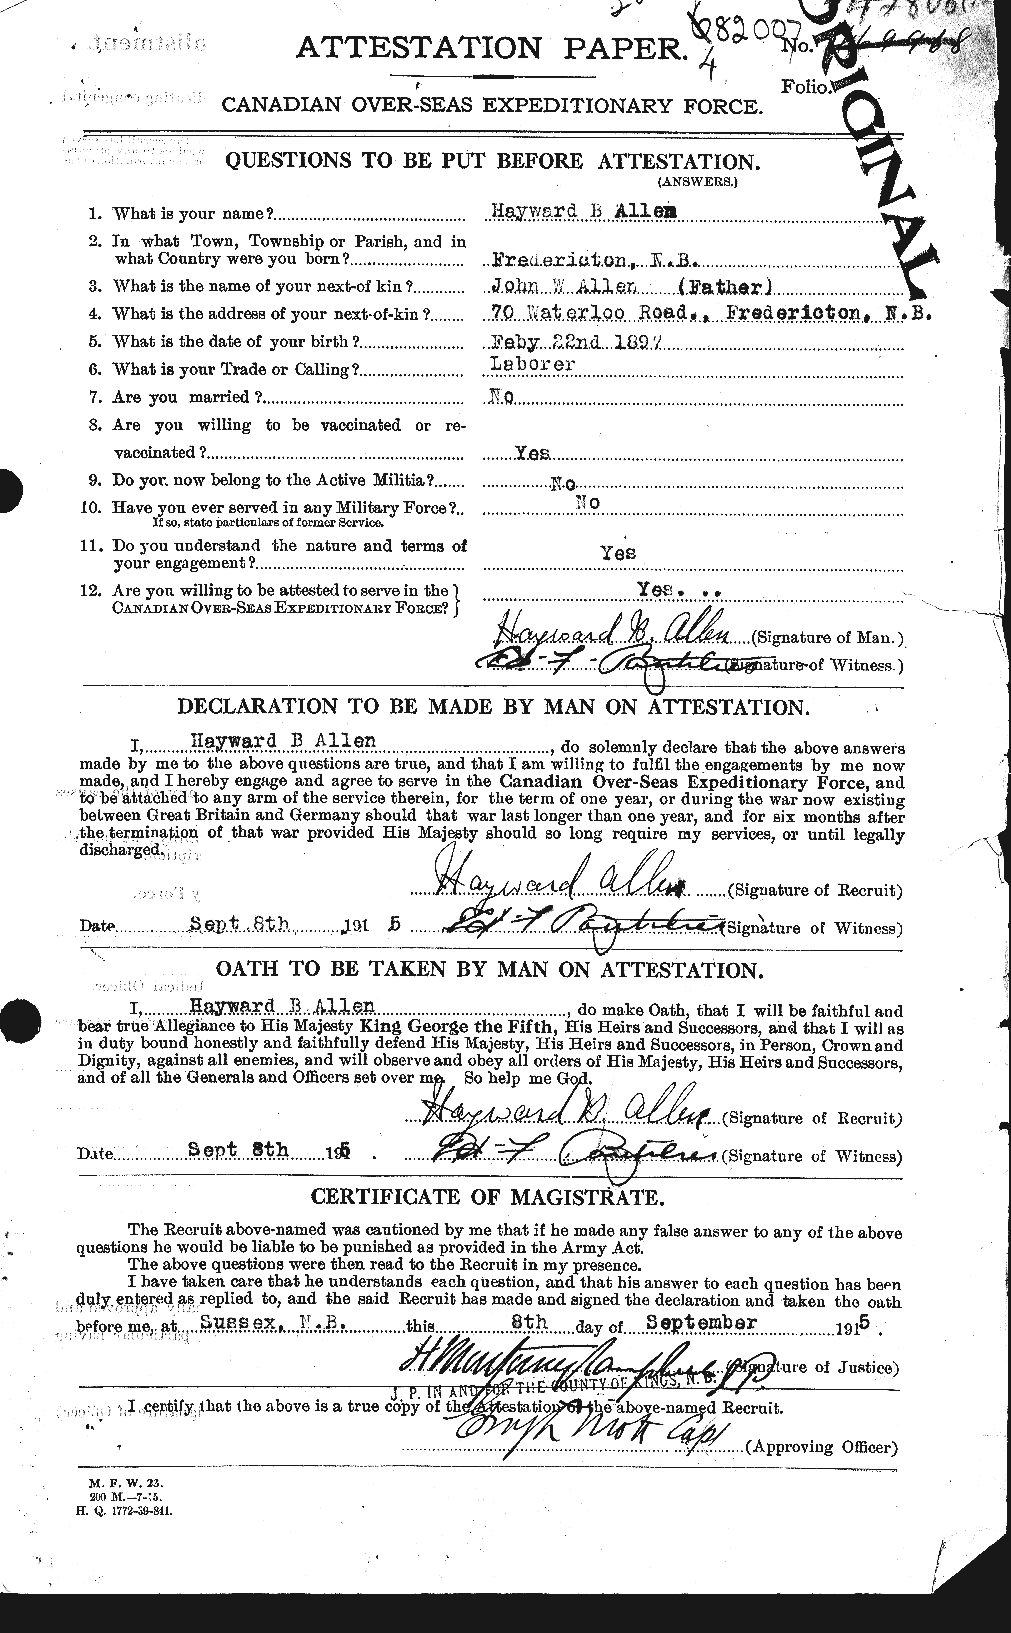 Dossiers du Personnel de la Première Guerre mondiale - CEC 206362a